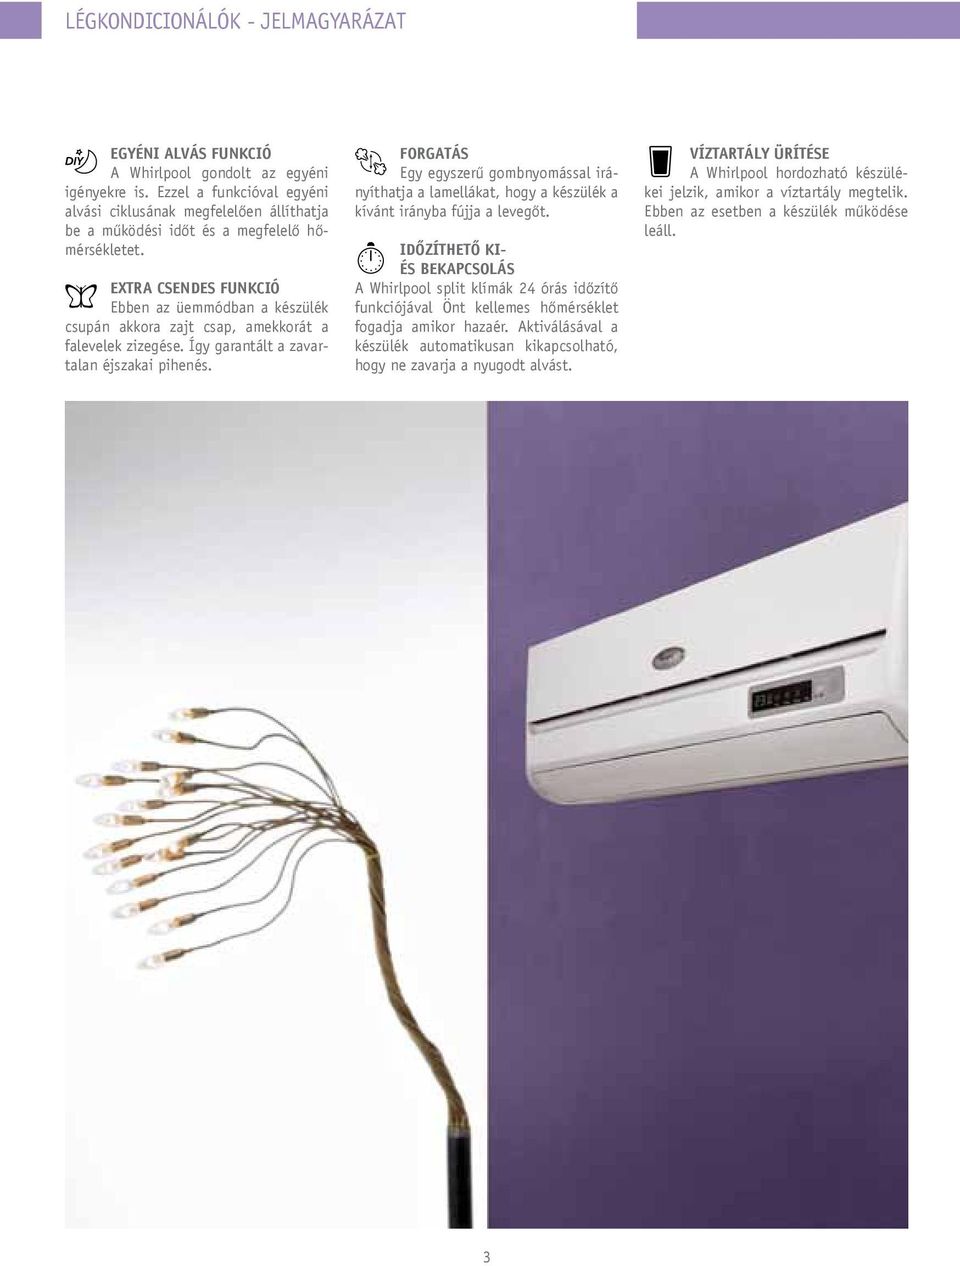 WHIRLPOOL. Légkondicionáló készülékek 2012/2013 GARANCIA - PDF Free Download